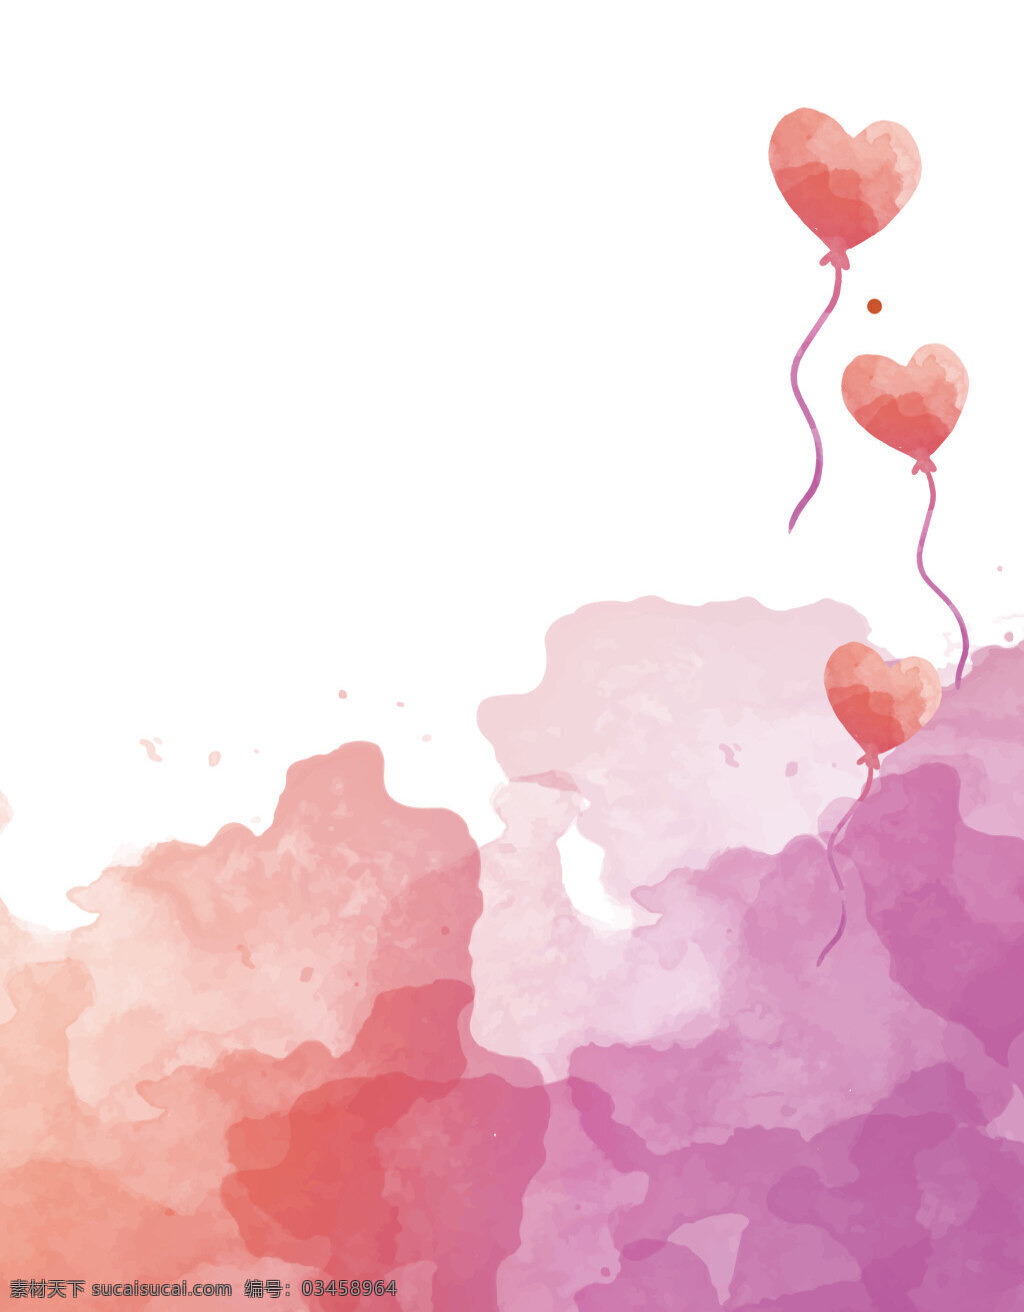 矢量 水彩 涂鸦 喷溅 手绘 心形 气球 背景 粉色 海报 梦幻 情人节 紫色